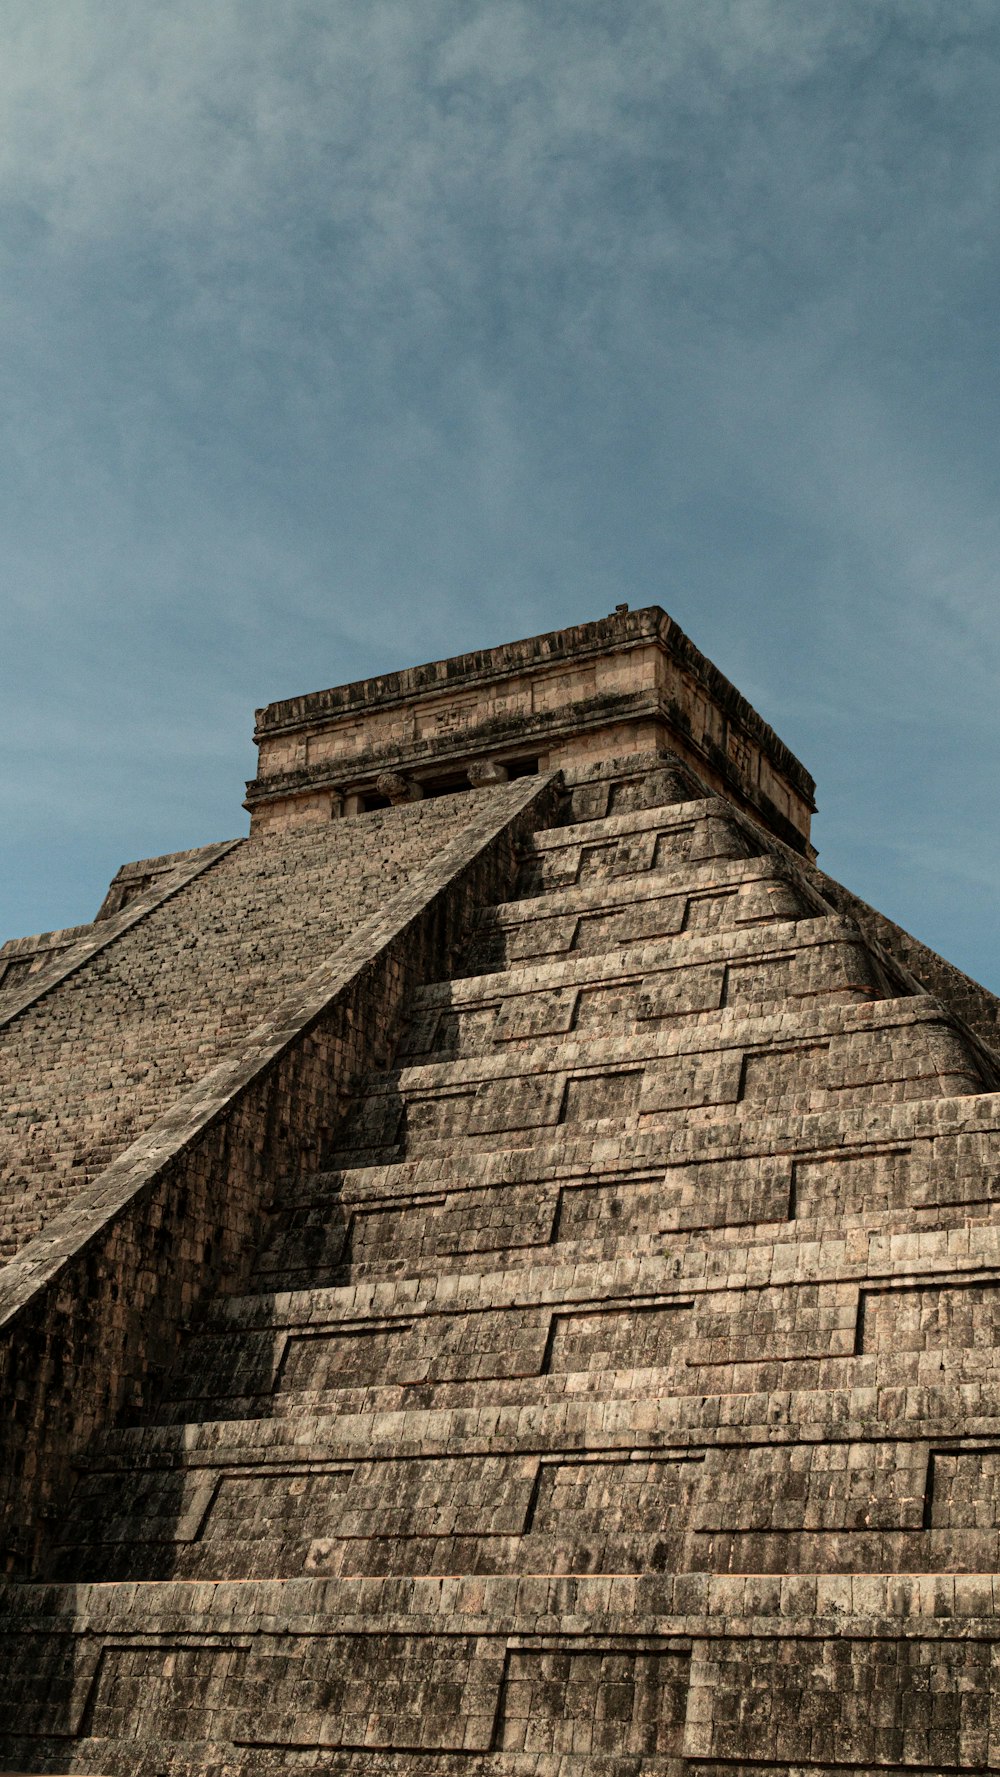 Une pyramide très haute avec une horloge sur le côté